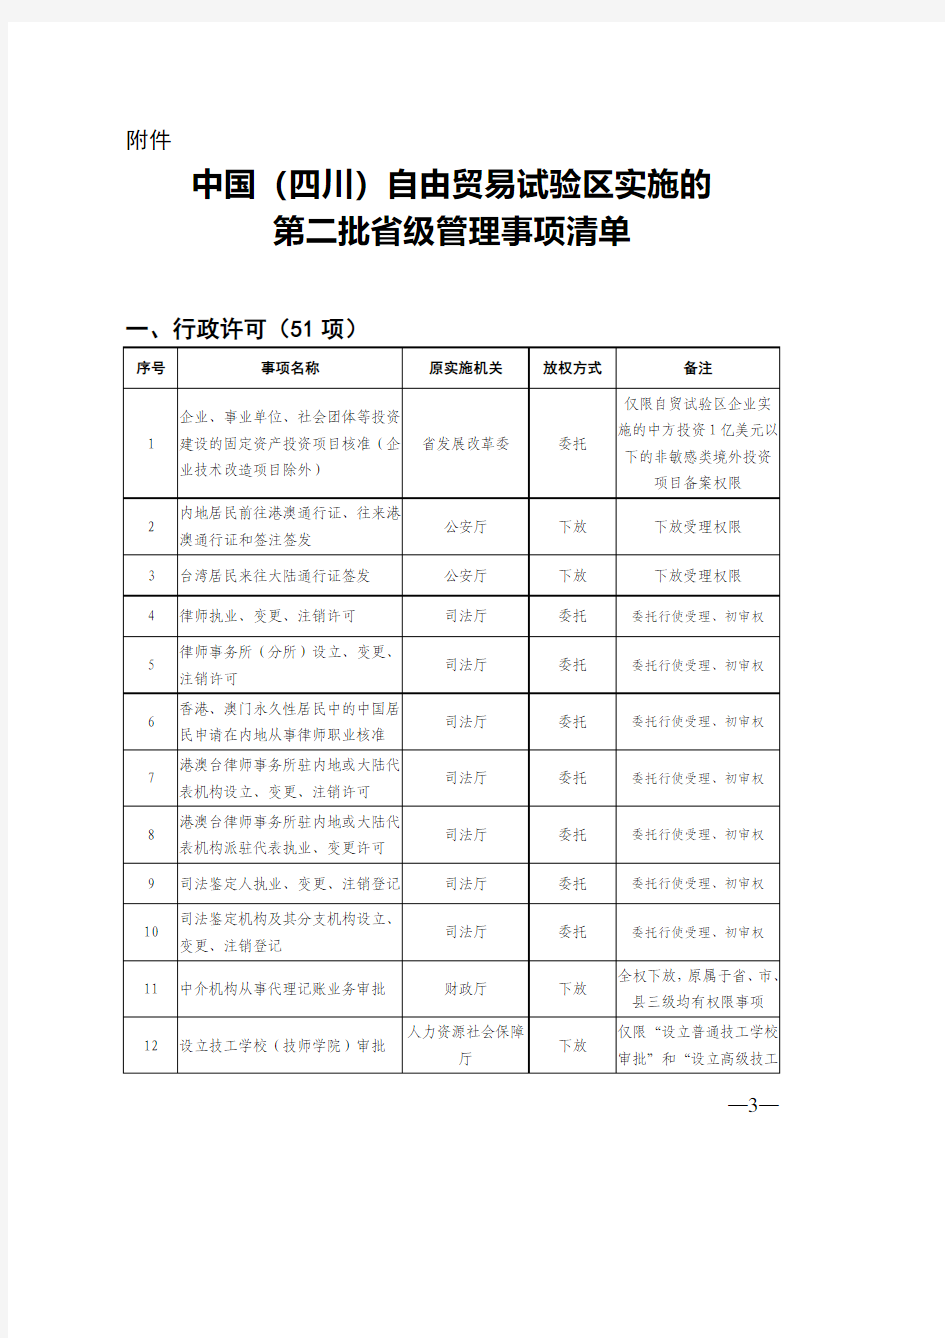 中国(四川)自由贸易试验区实施的第二批省级管理事项清单